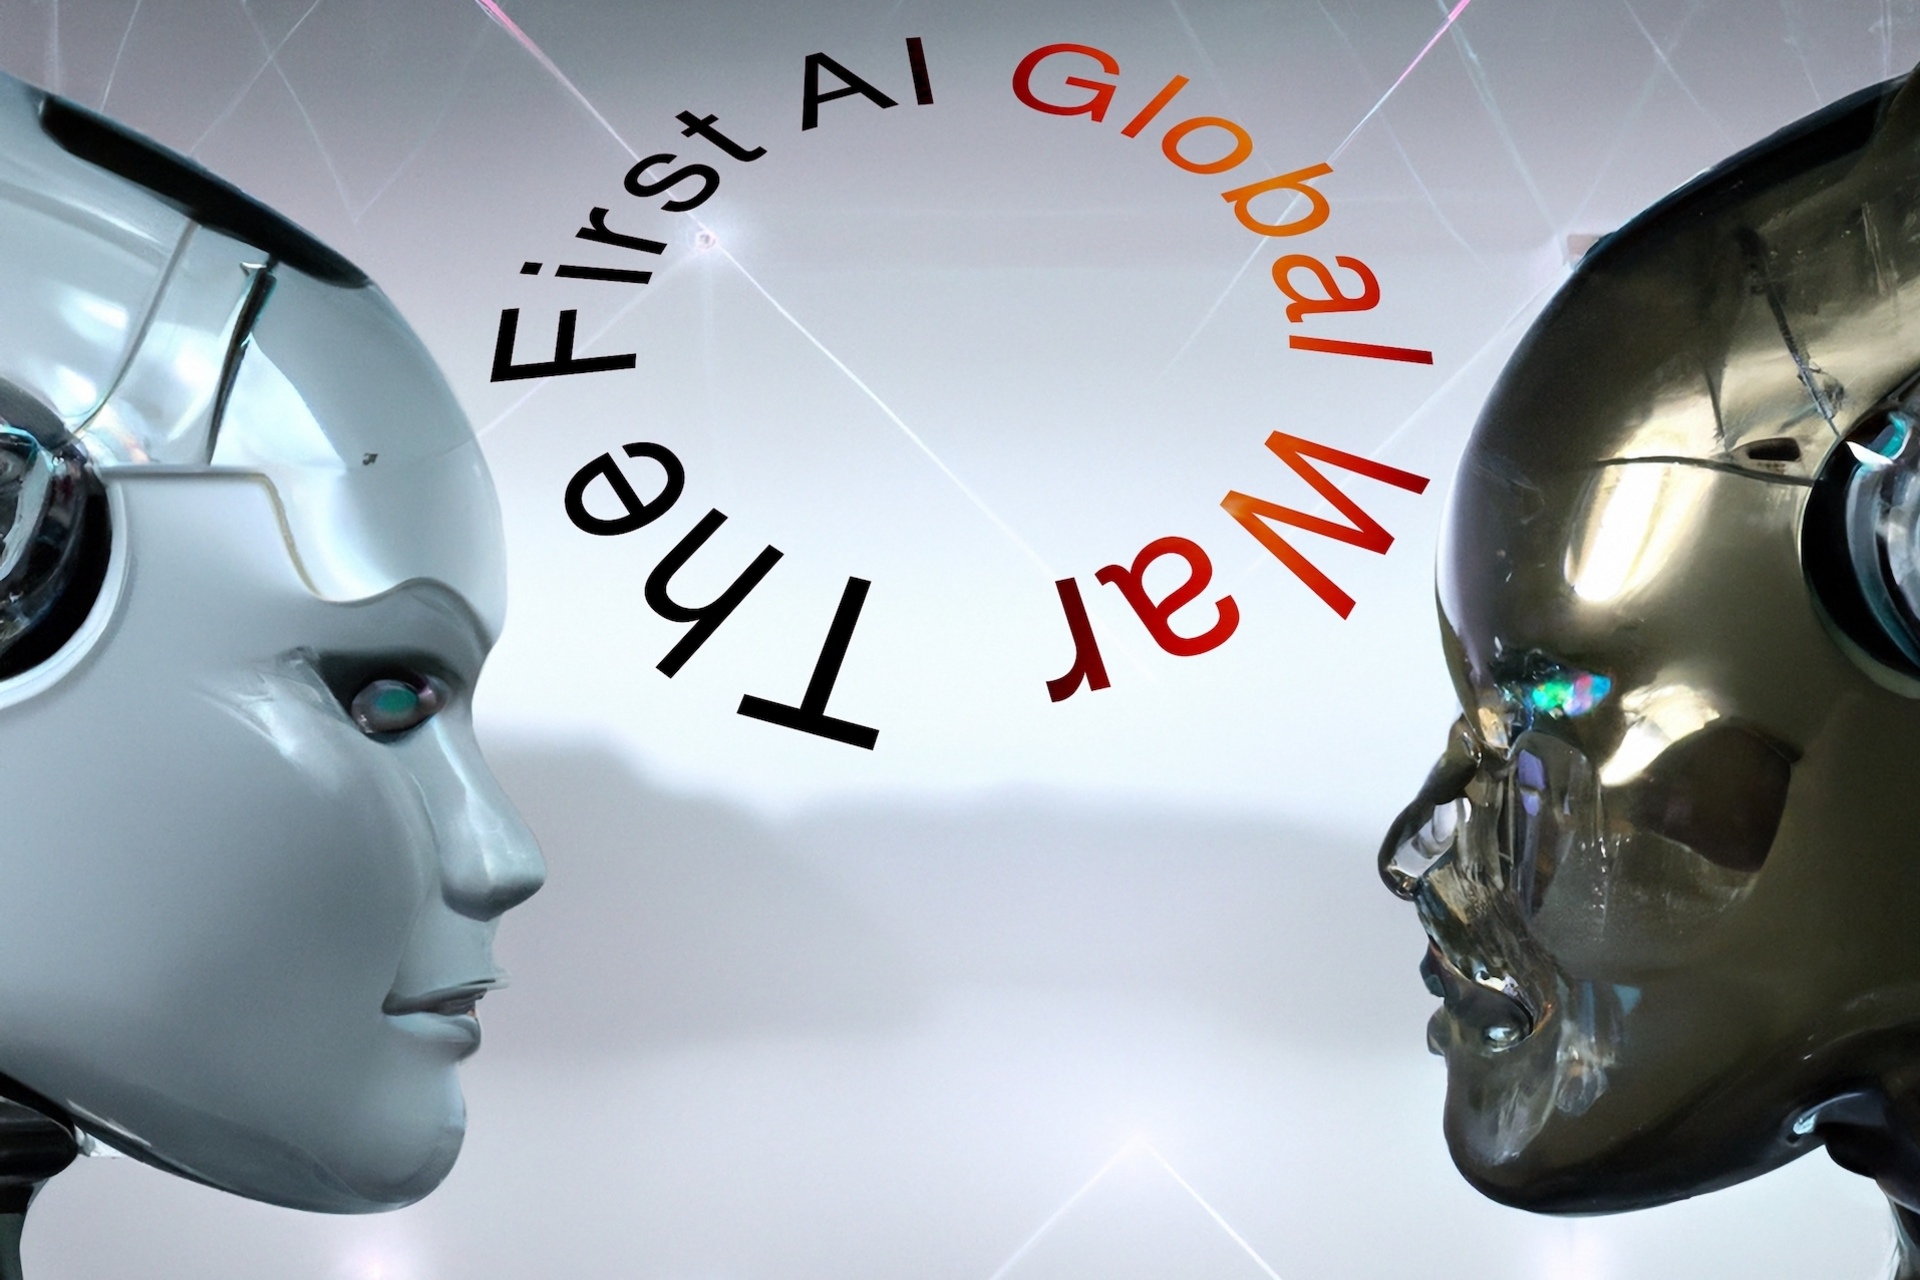 Kunstig intelligens: en kunstnerisk repræsentation af "First AI Global War", bogstaveligt talt "First World War of Artificial Intelligence", skabt af forfatteren til artiklen med Dall-E